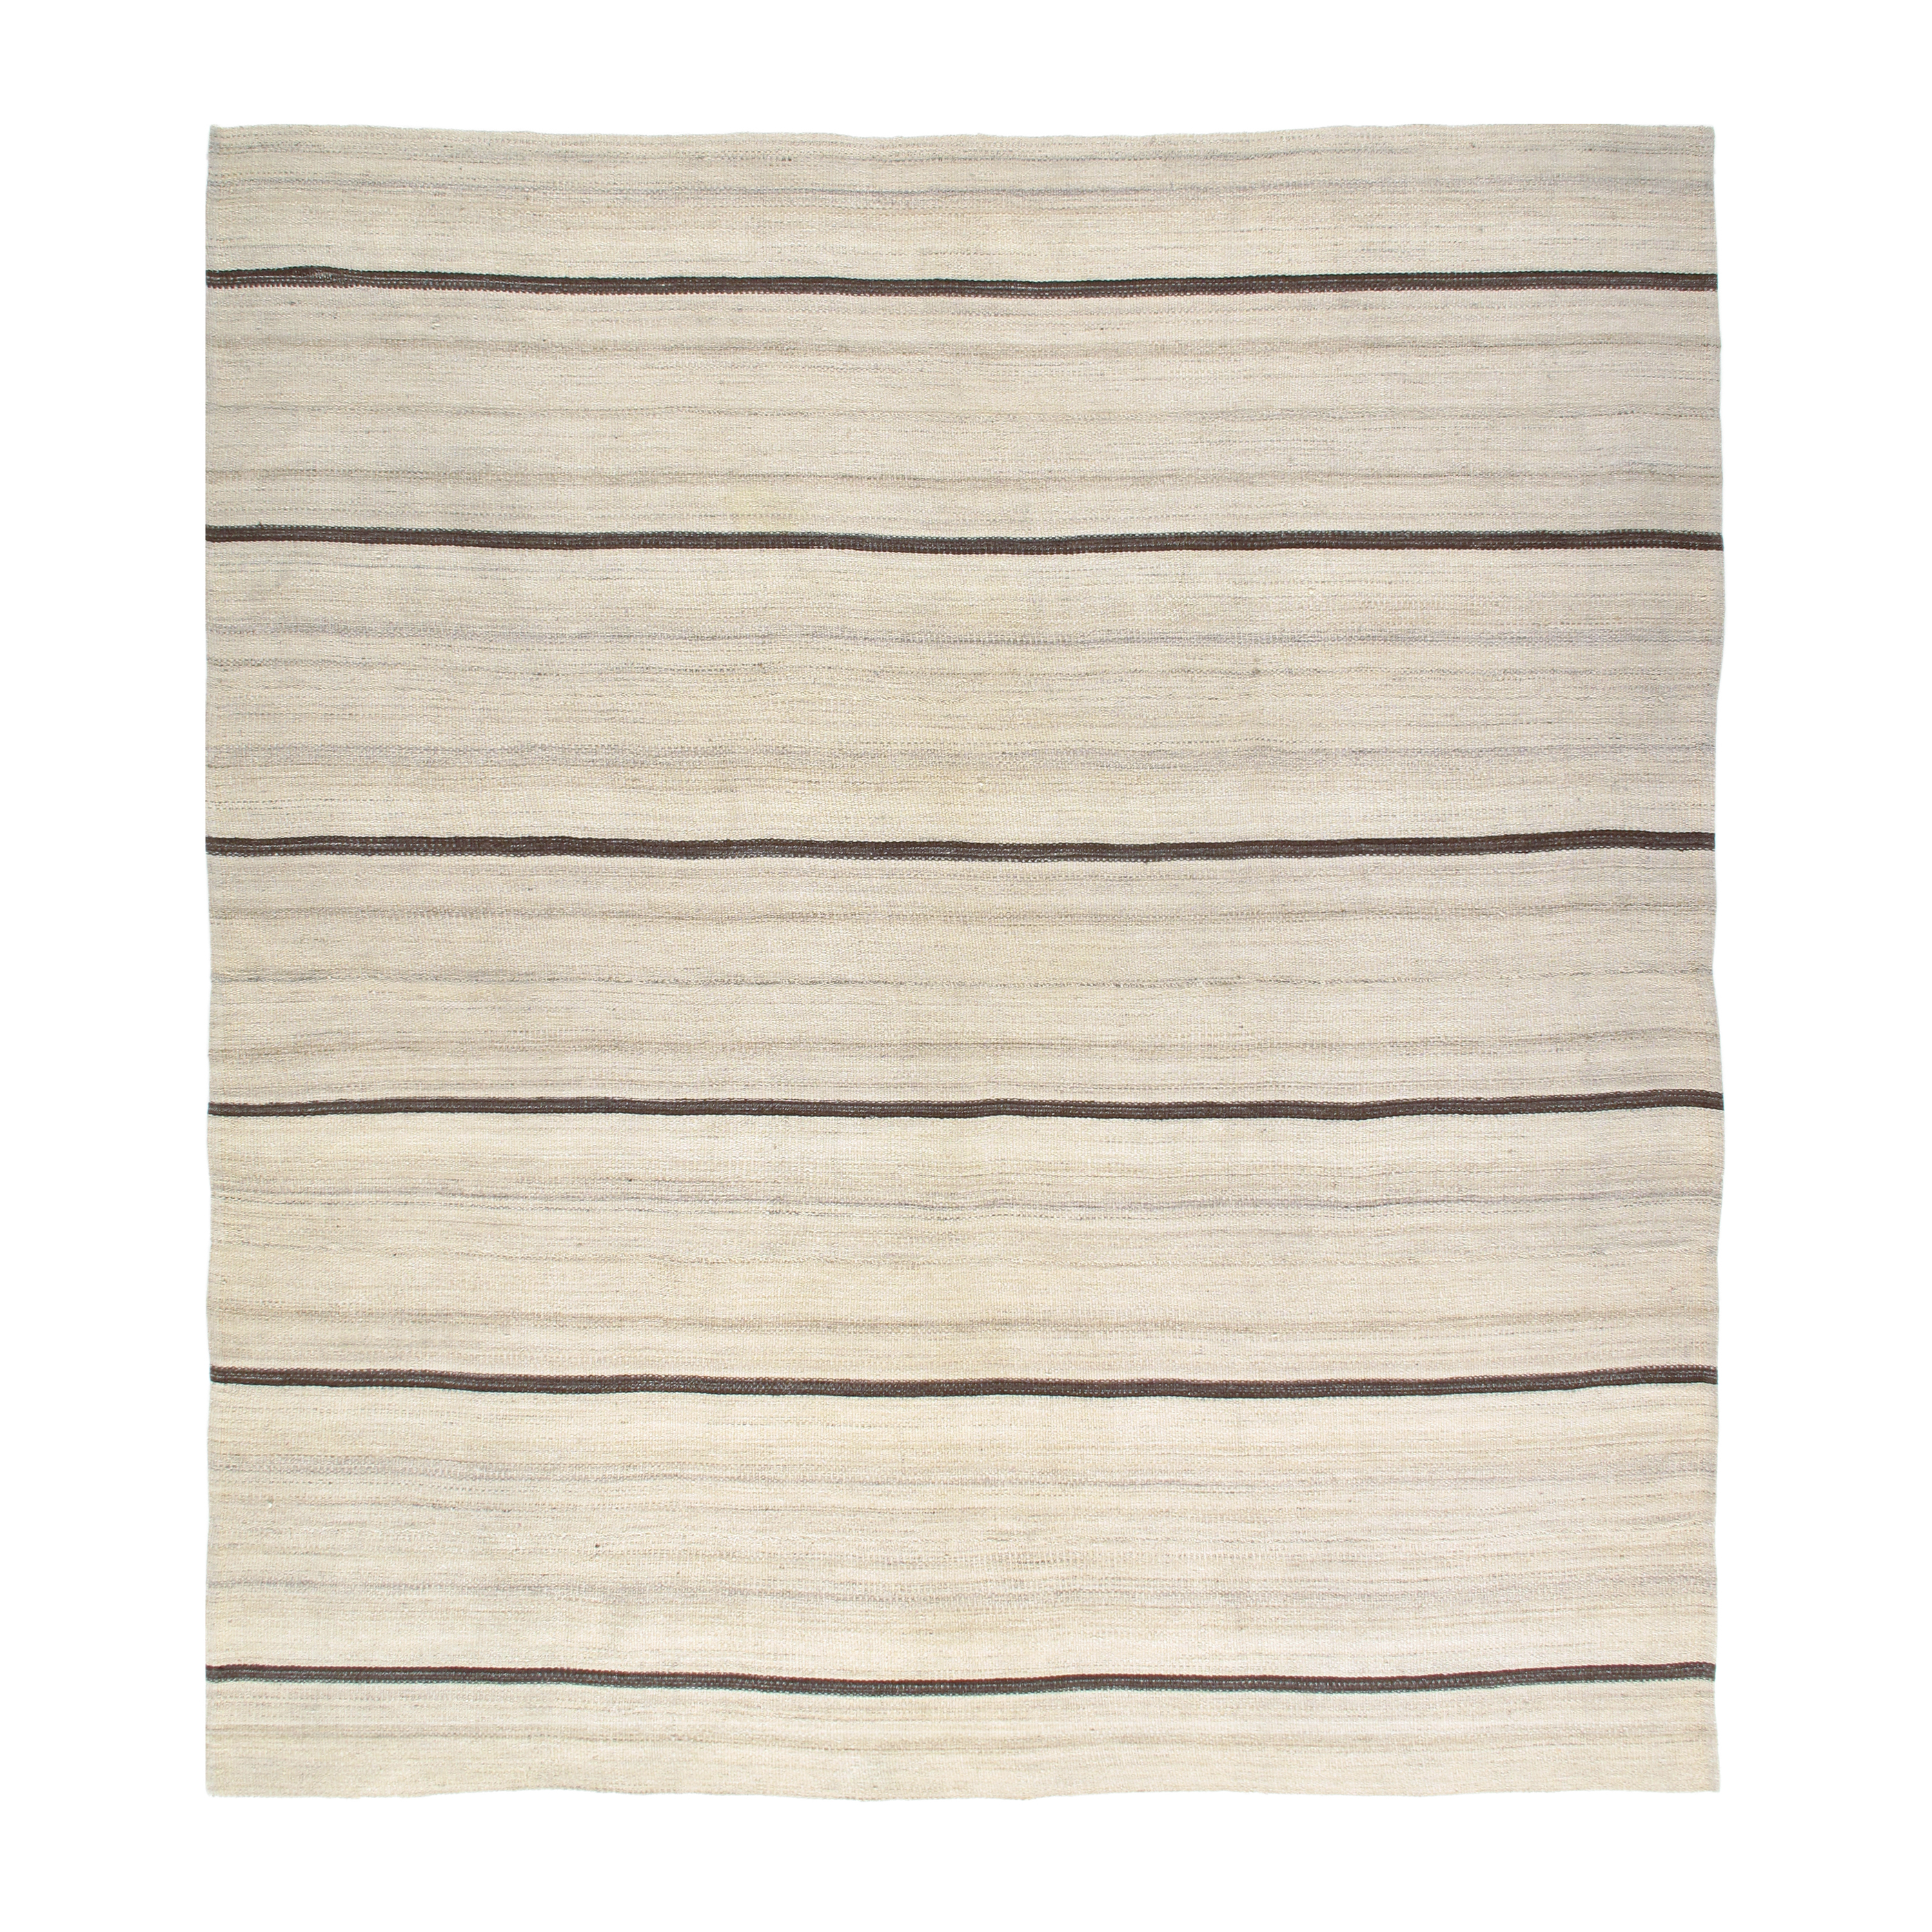 This Vintage flatweave rug is handwoven 